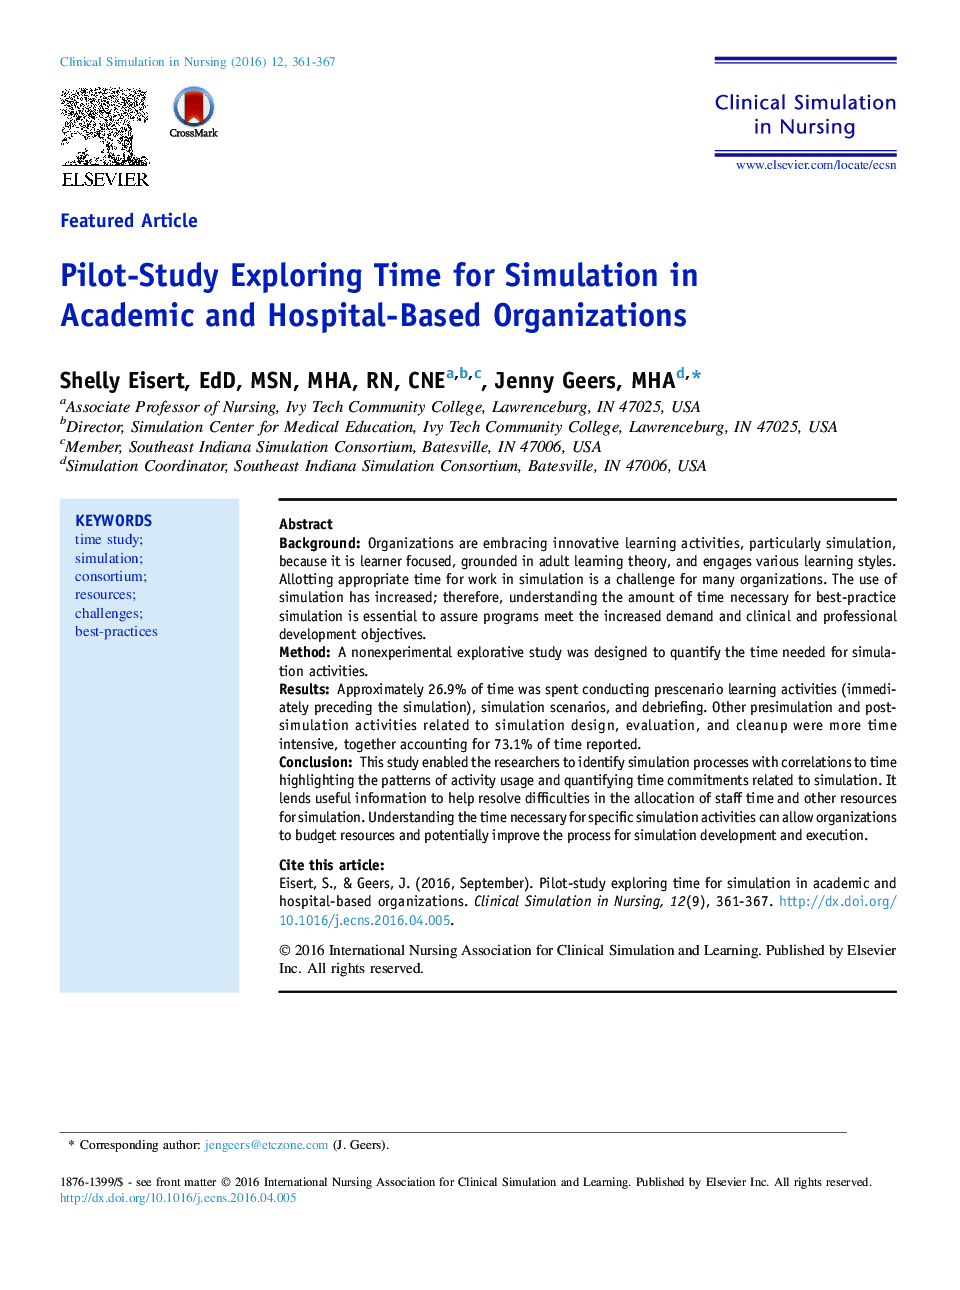 بررسی مطالعه آزمایشی زمان برای شبیه سازی در سازمان های آموزشی دانشگاهی و بیمارستان